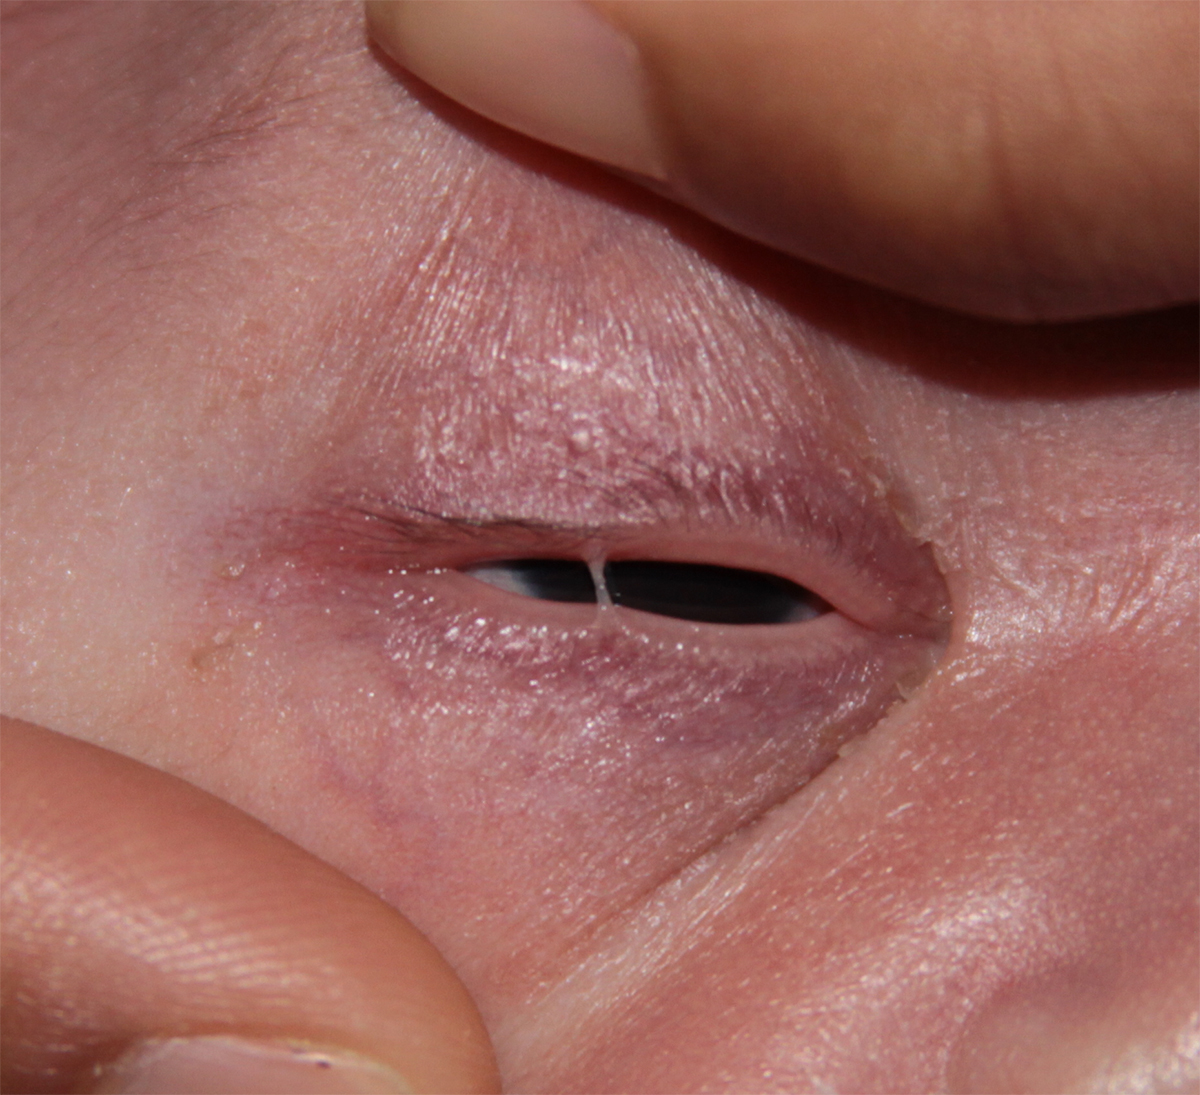 Fused part of the eyelid margins